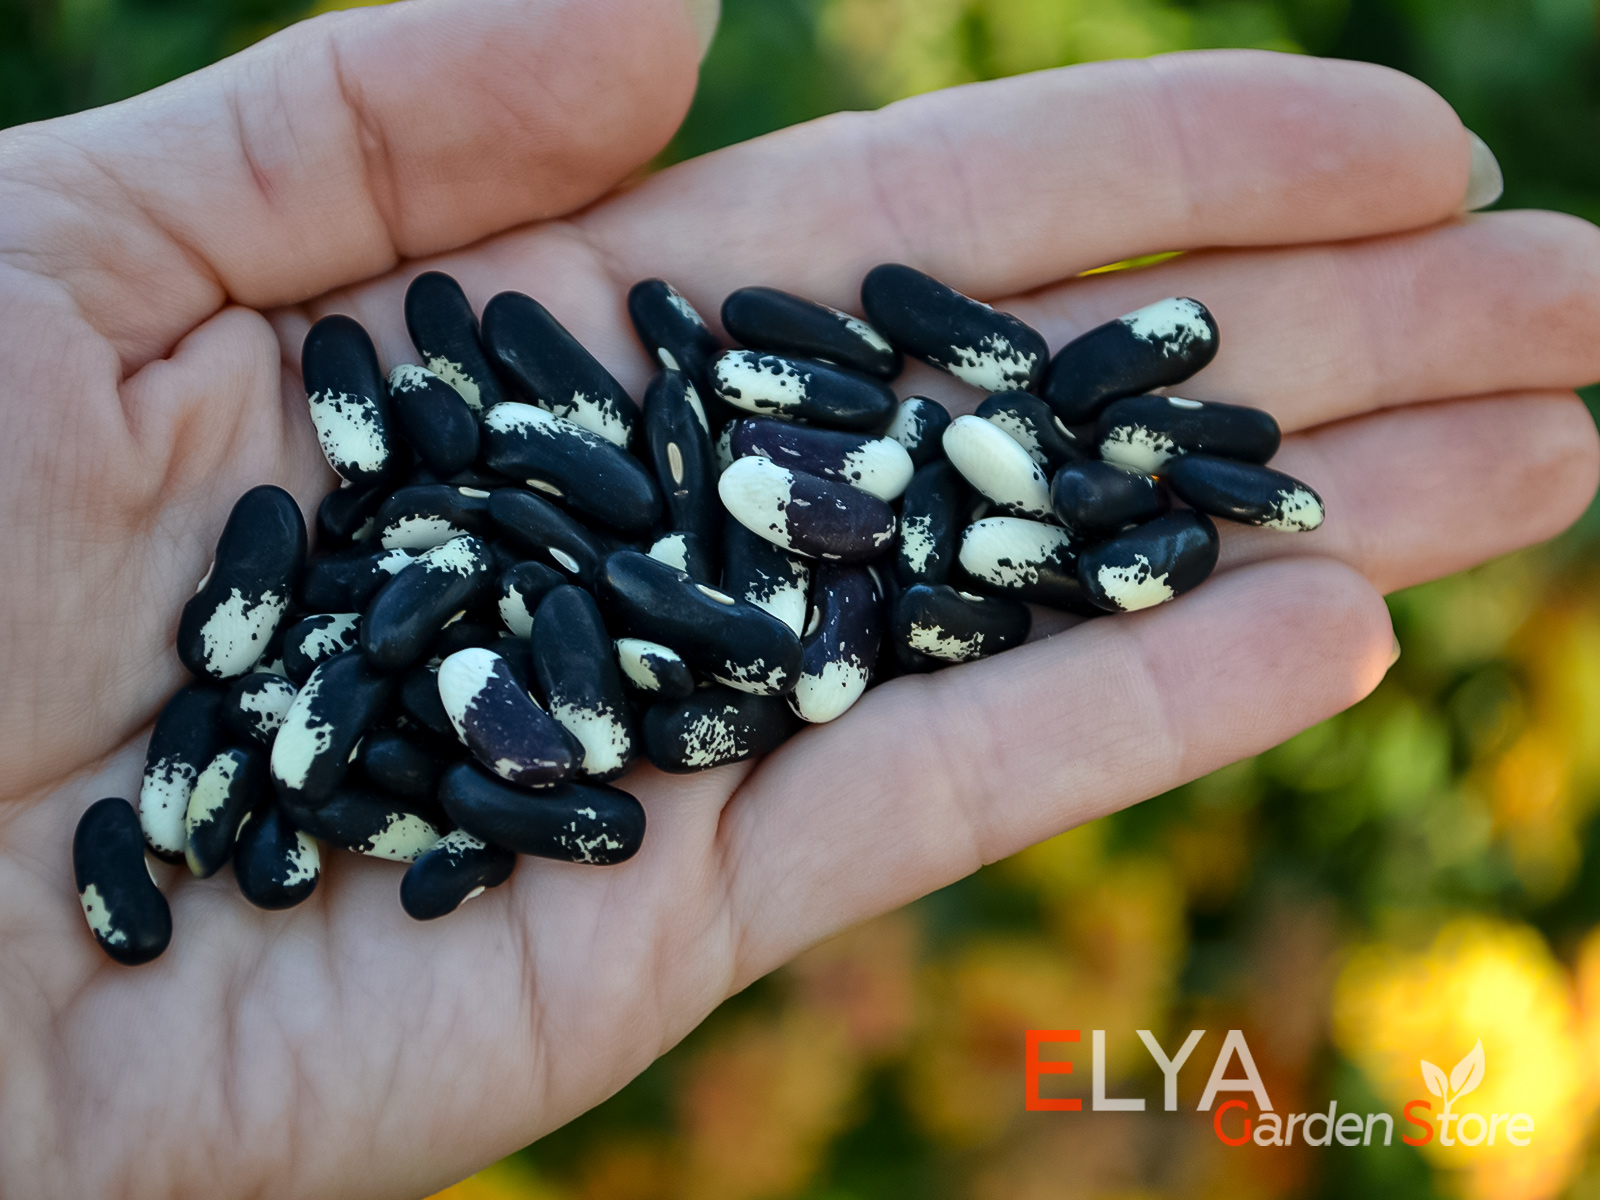 Коллекционный сорт фасоли Сорока (Magpie) - семена в магазине Elya Garden